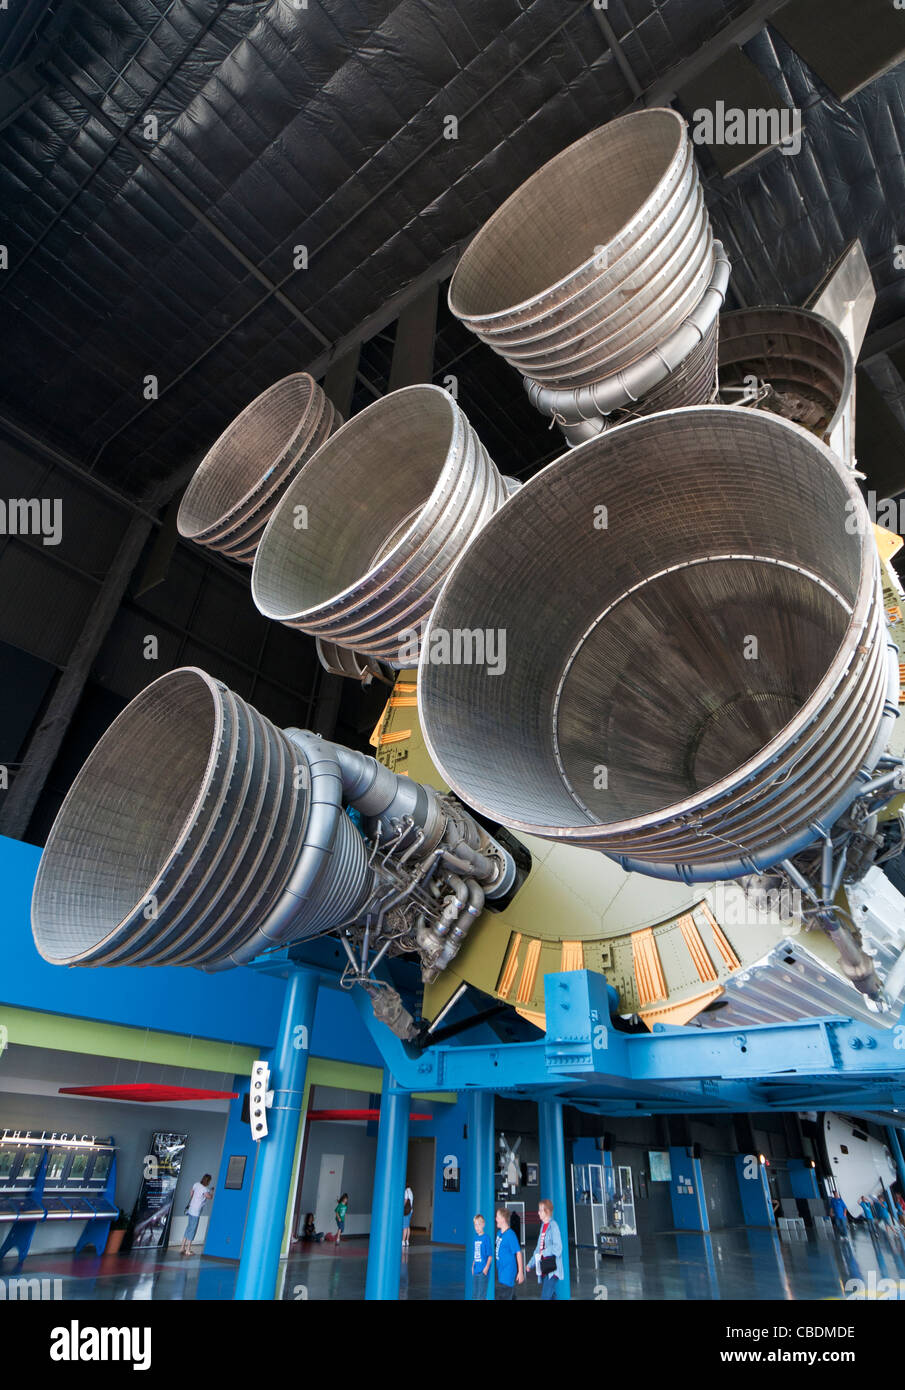 Alabama, Huntsville, USA Platz & Rocket Center, Davidson Zentrum für Weltraumforschung, Saturn V-Rakete, Bühne zunächst Motoren Stockfoto